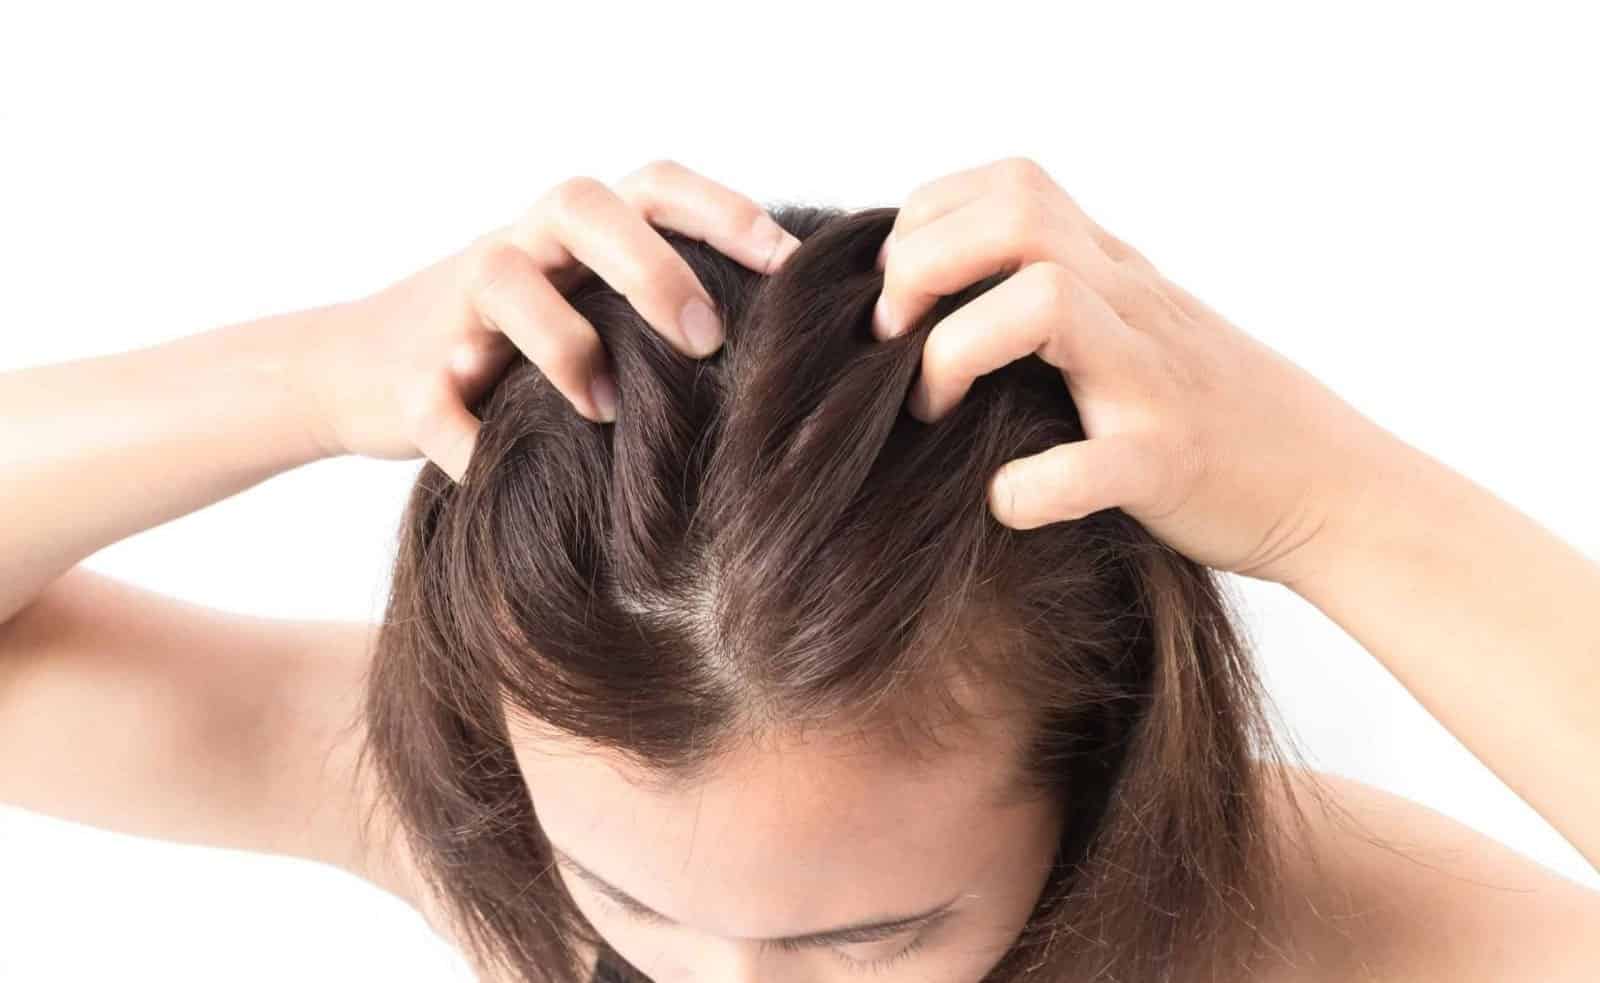 Massage domain authority đầu hùn giới hạn gãy rụng tóc